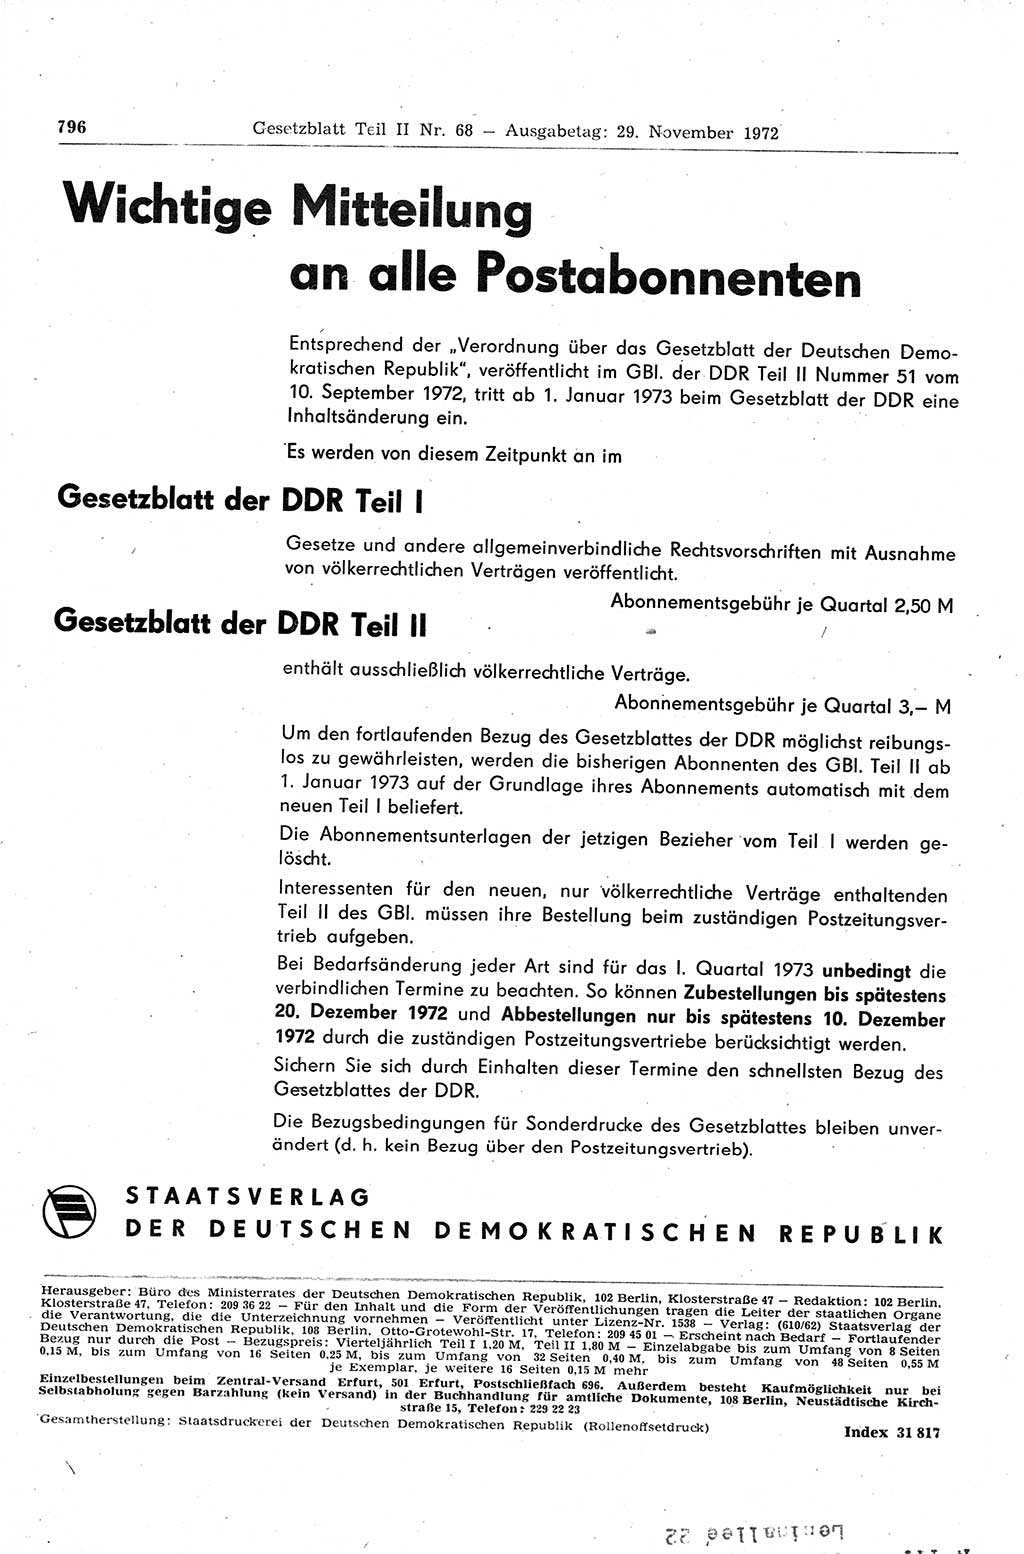 Gesetzblatt (GBl.) der Deutschen Demokratischen Republik (DDR) Teil ⅠⅠ 1972, Seite 796 (GBl. DDR ⅠⅠ 1972, S. 796)